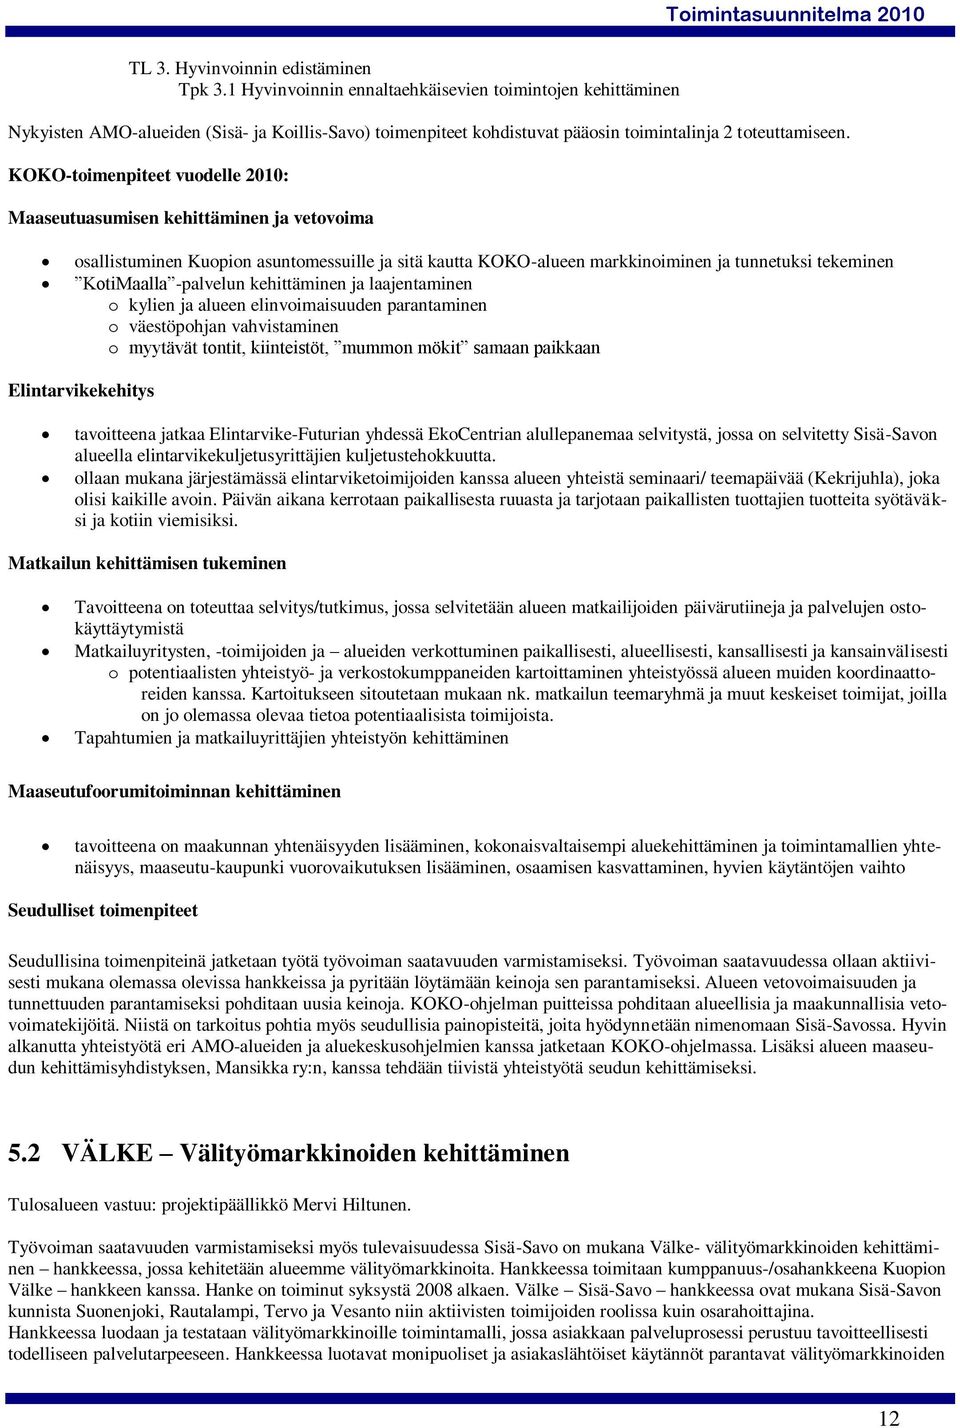 KOKO-toimenpiteet vuodelle 2010: Maaseutuasumisen kehittäminen ja vetovoima osallistuminen Kuopion asuntomessuille ja sitä kautta KOKO-alueen markkinoiminen ja tunnetuksi tekeminen KotiMaalla